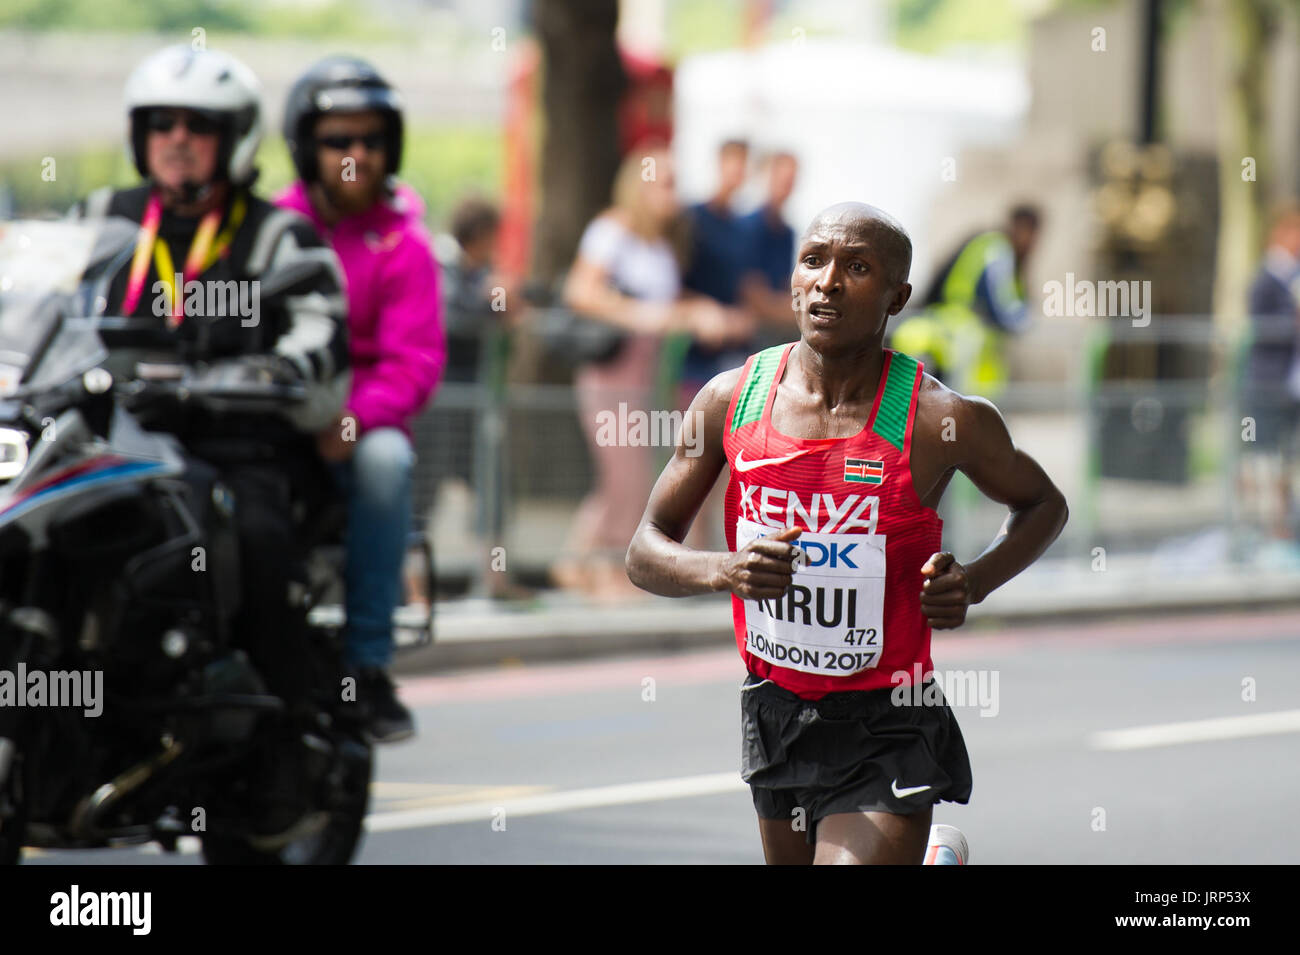 Londres, Royaume-Uni. 6 Août, 2017. Geoffrey Kirui (Kenya) menant l'IAAF World Athletics Championships Men's Marathon Race Crédit : Phil Swallow Photography/Alamy Live News Banque D'Images